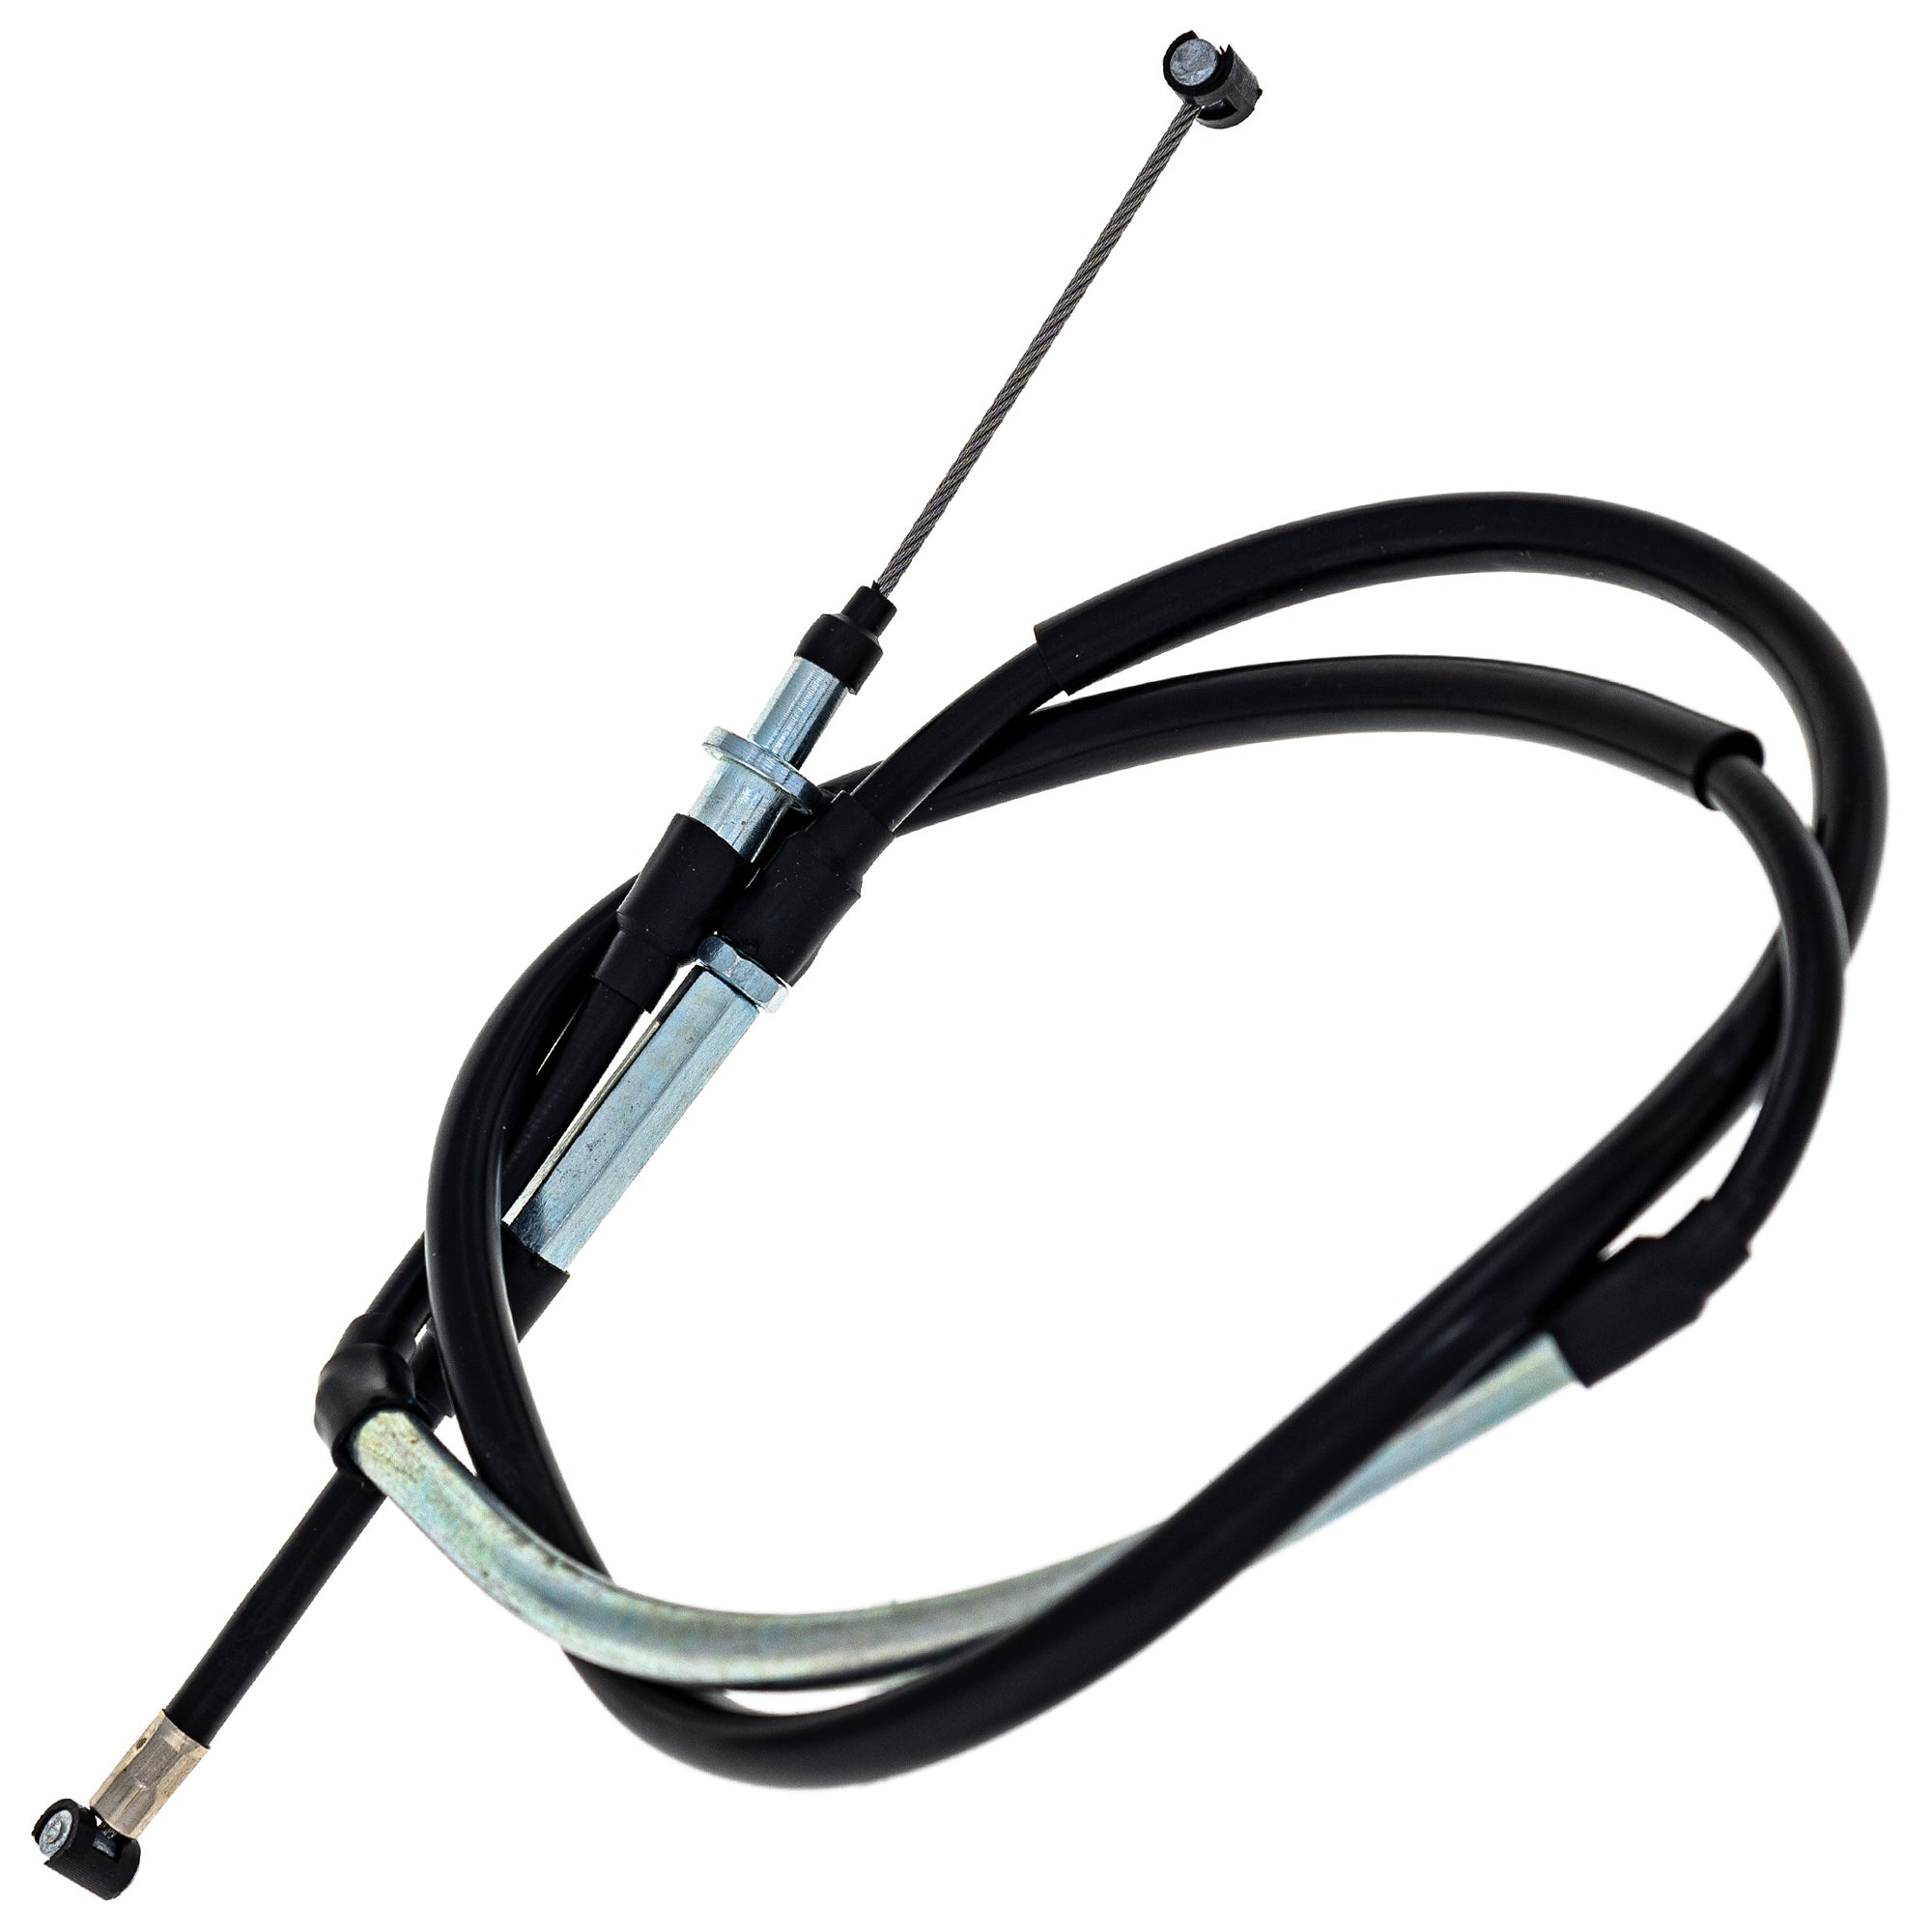 Clutch Cable For Suzuki Kawasaki K5401-10037 54011-0044 54011-0037